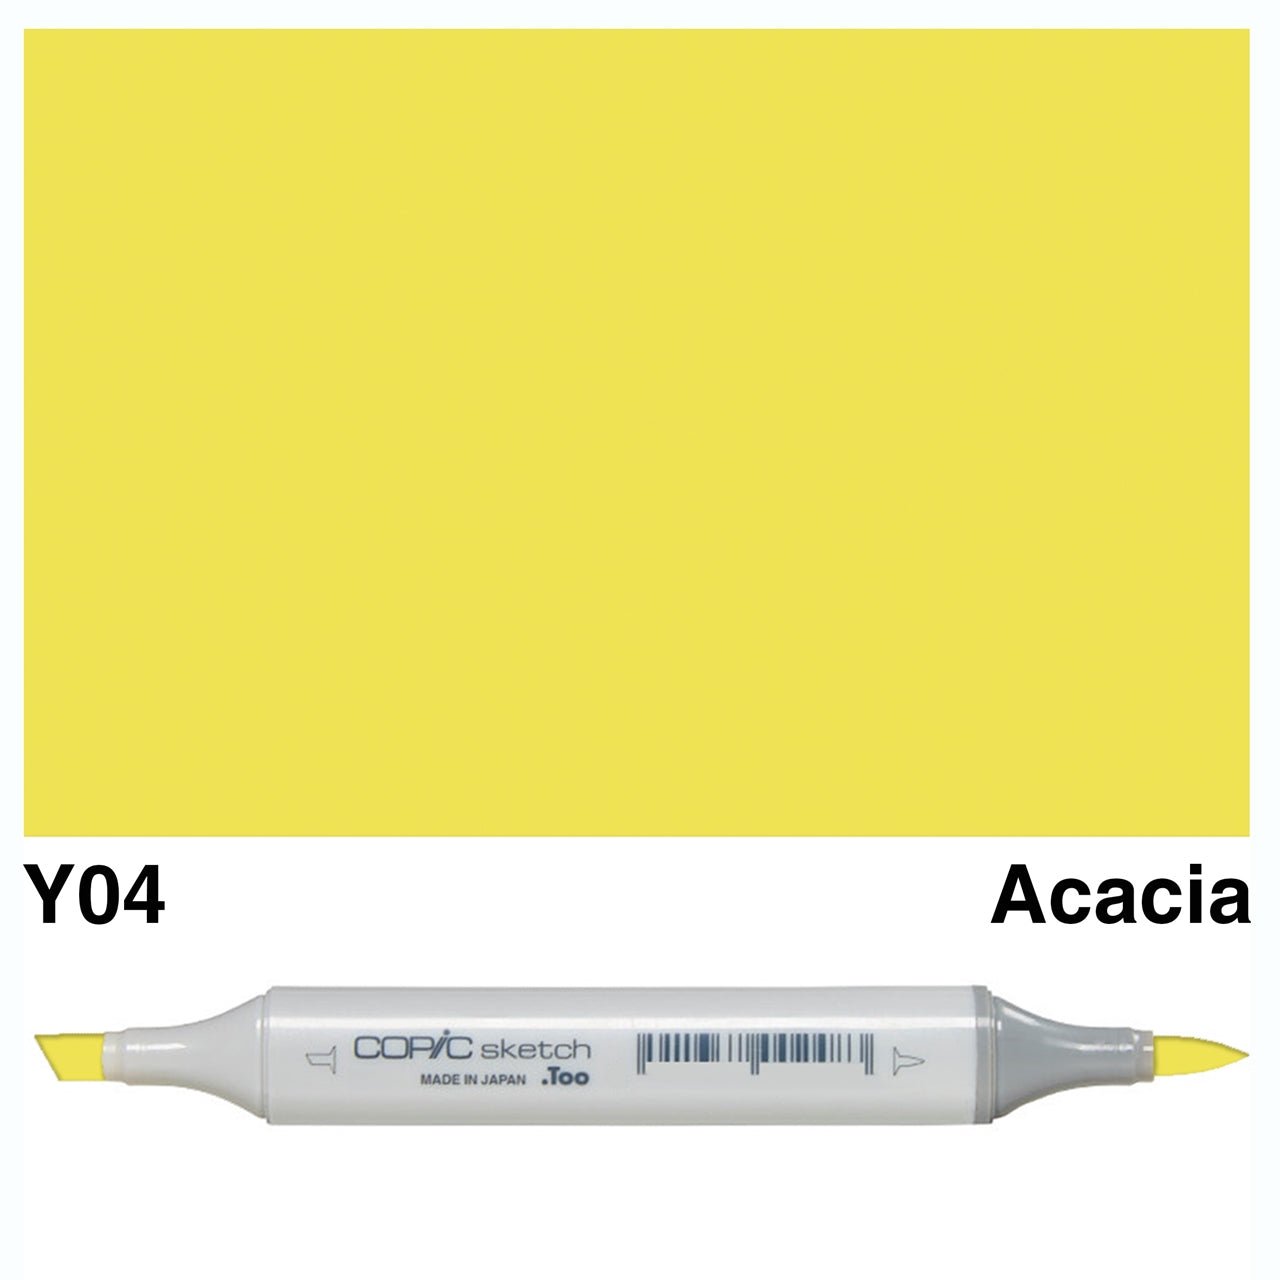 Copic Sketch Y04 Acacia - theartshop.com.au